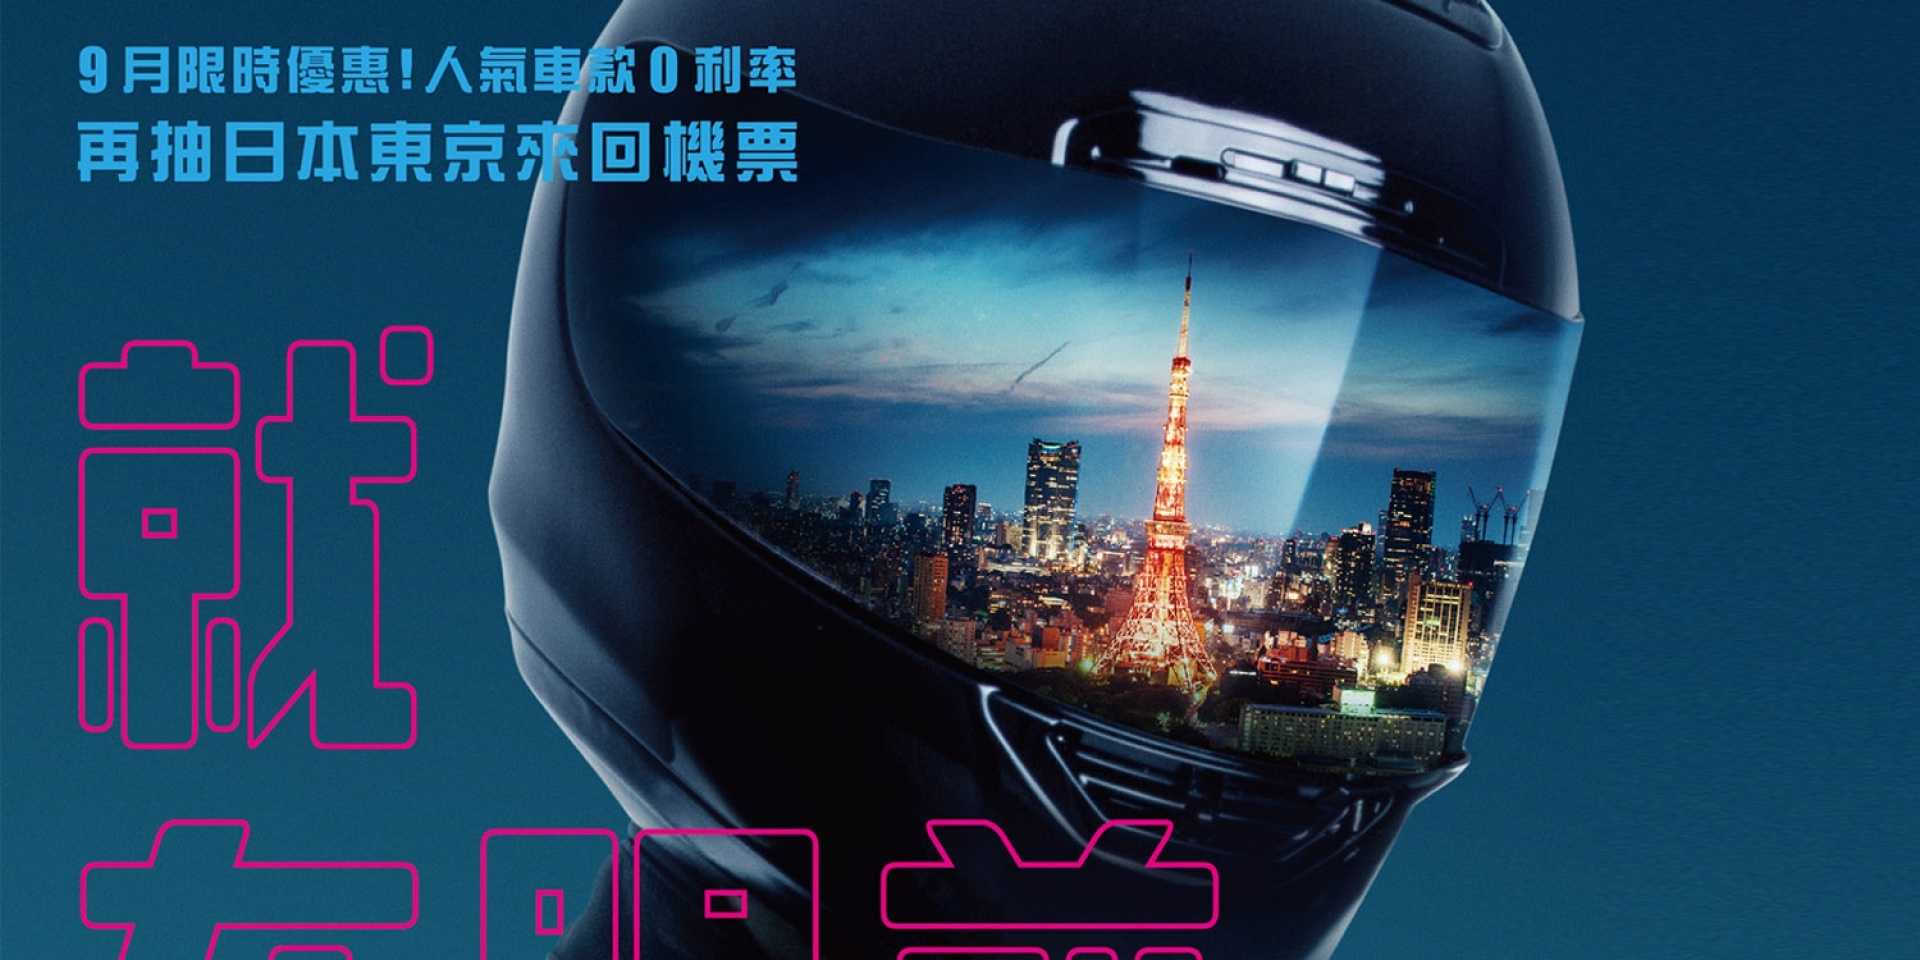 官方新聞稿。Honda 「美夢 就在眼前」專案開跑 9月限時優惠！人氣車款零利率再抽日本東京來回機票！！